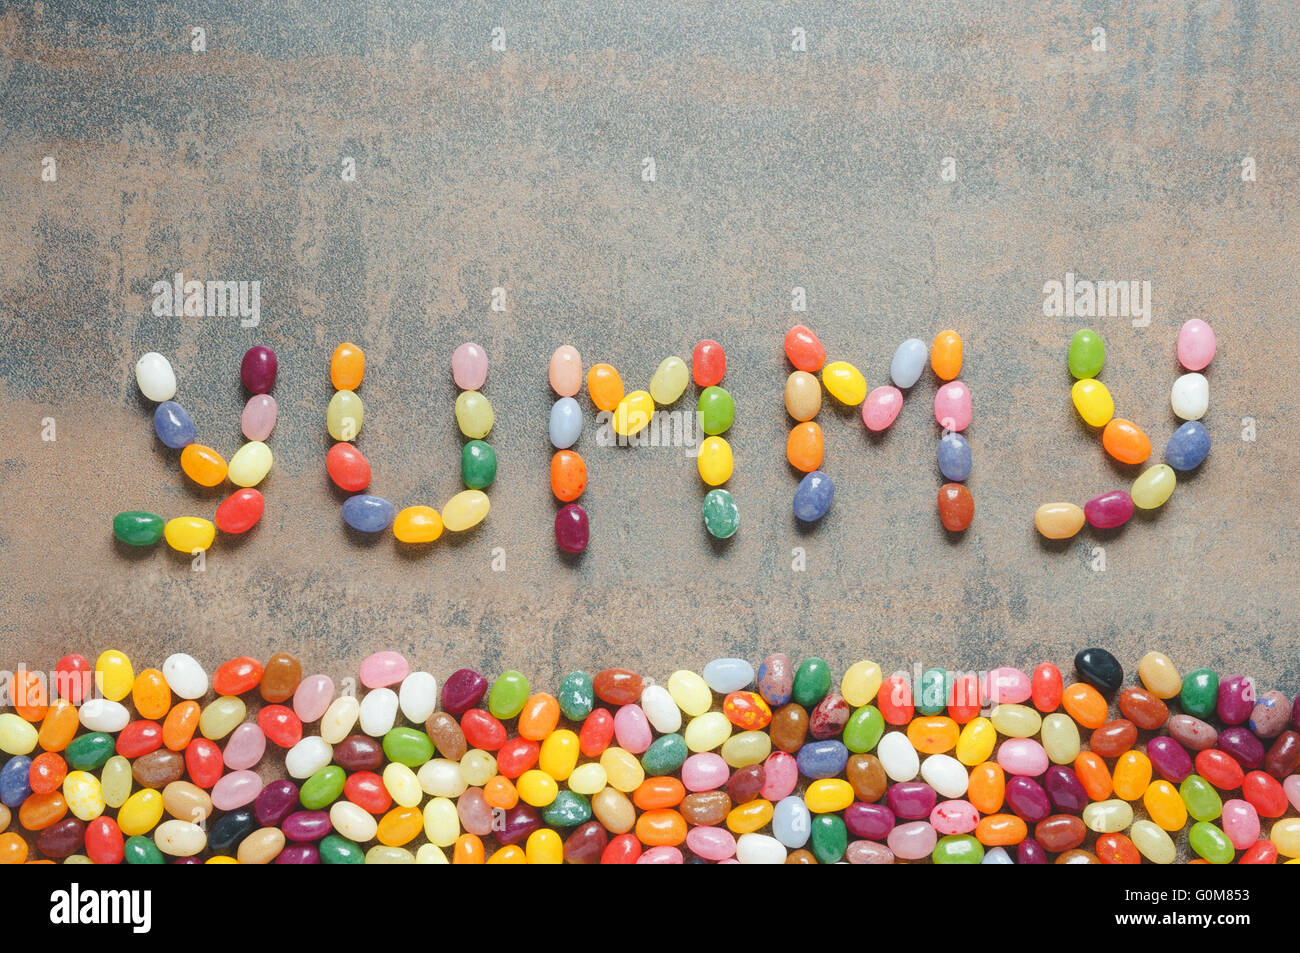 Yummy palabra escrita con Jelly Beans, fondo oscuro con borde colorido Foto de stock